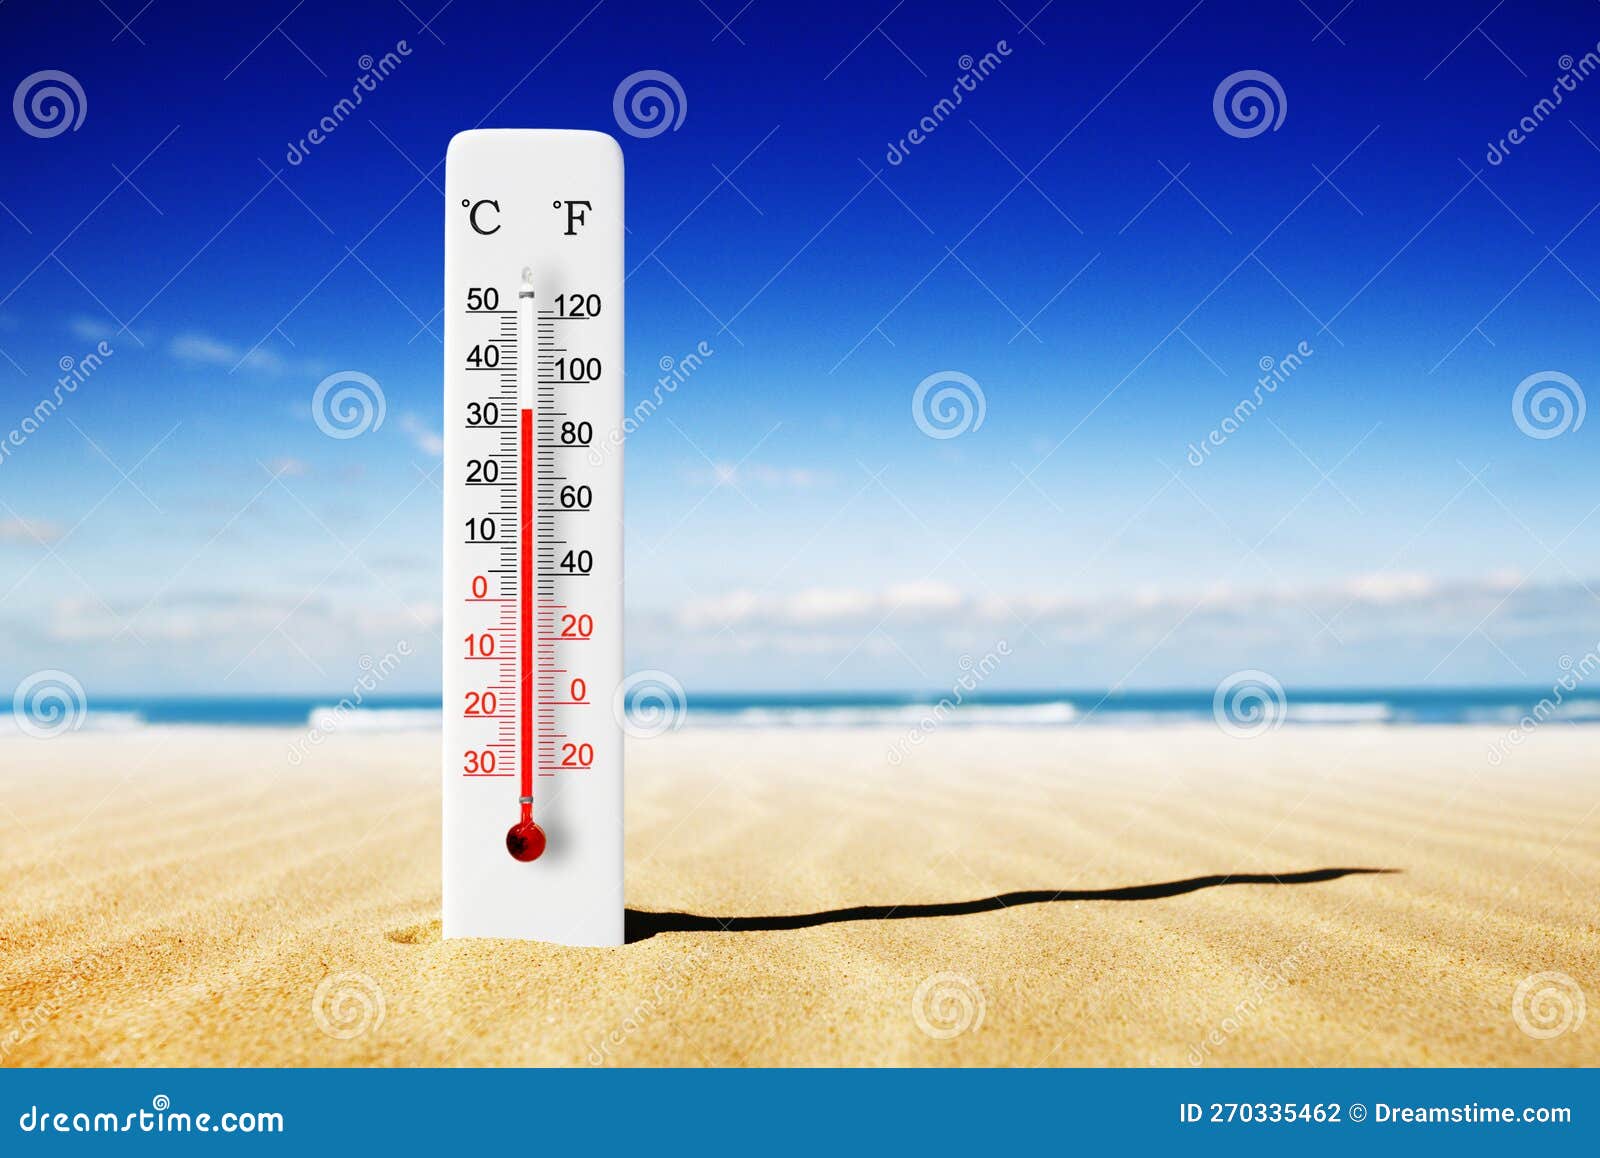 Dia Quente De Verão. Termômetro De Celsius E Fahrenheit Na Areia